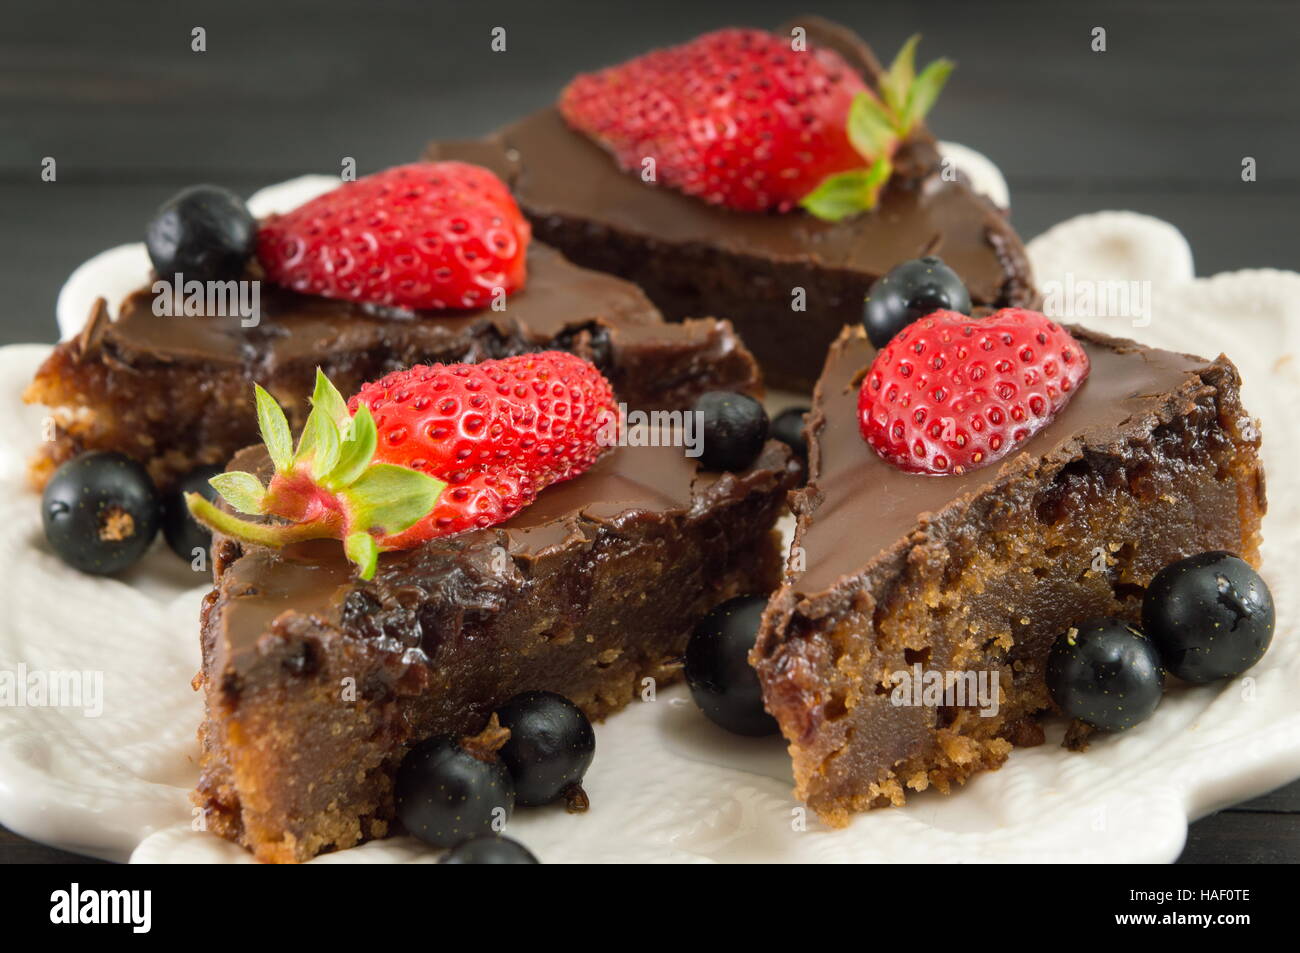 Tranches de gâteau au chocolat avec des fraises entières sur le dessus Banque D'Images